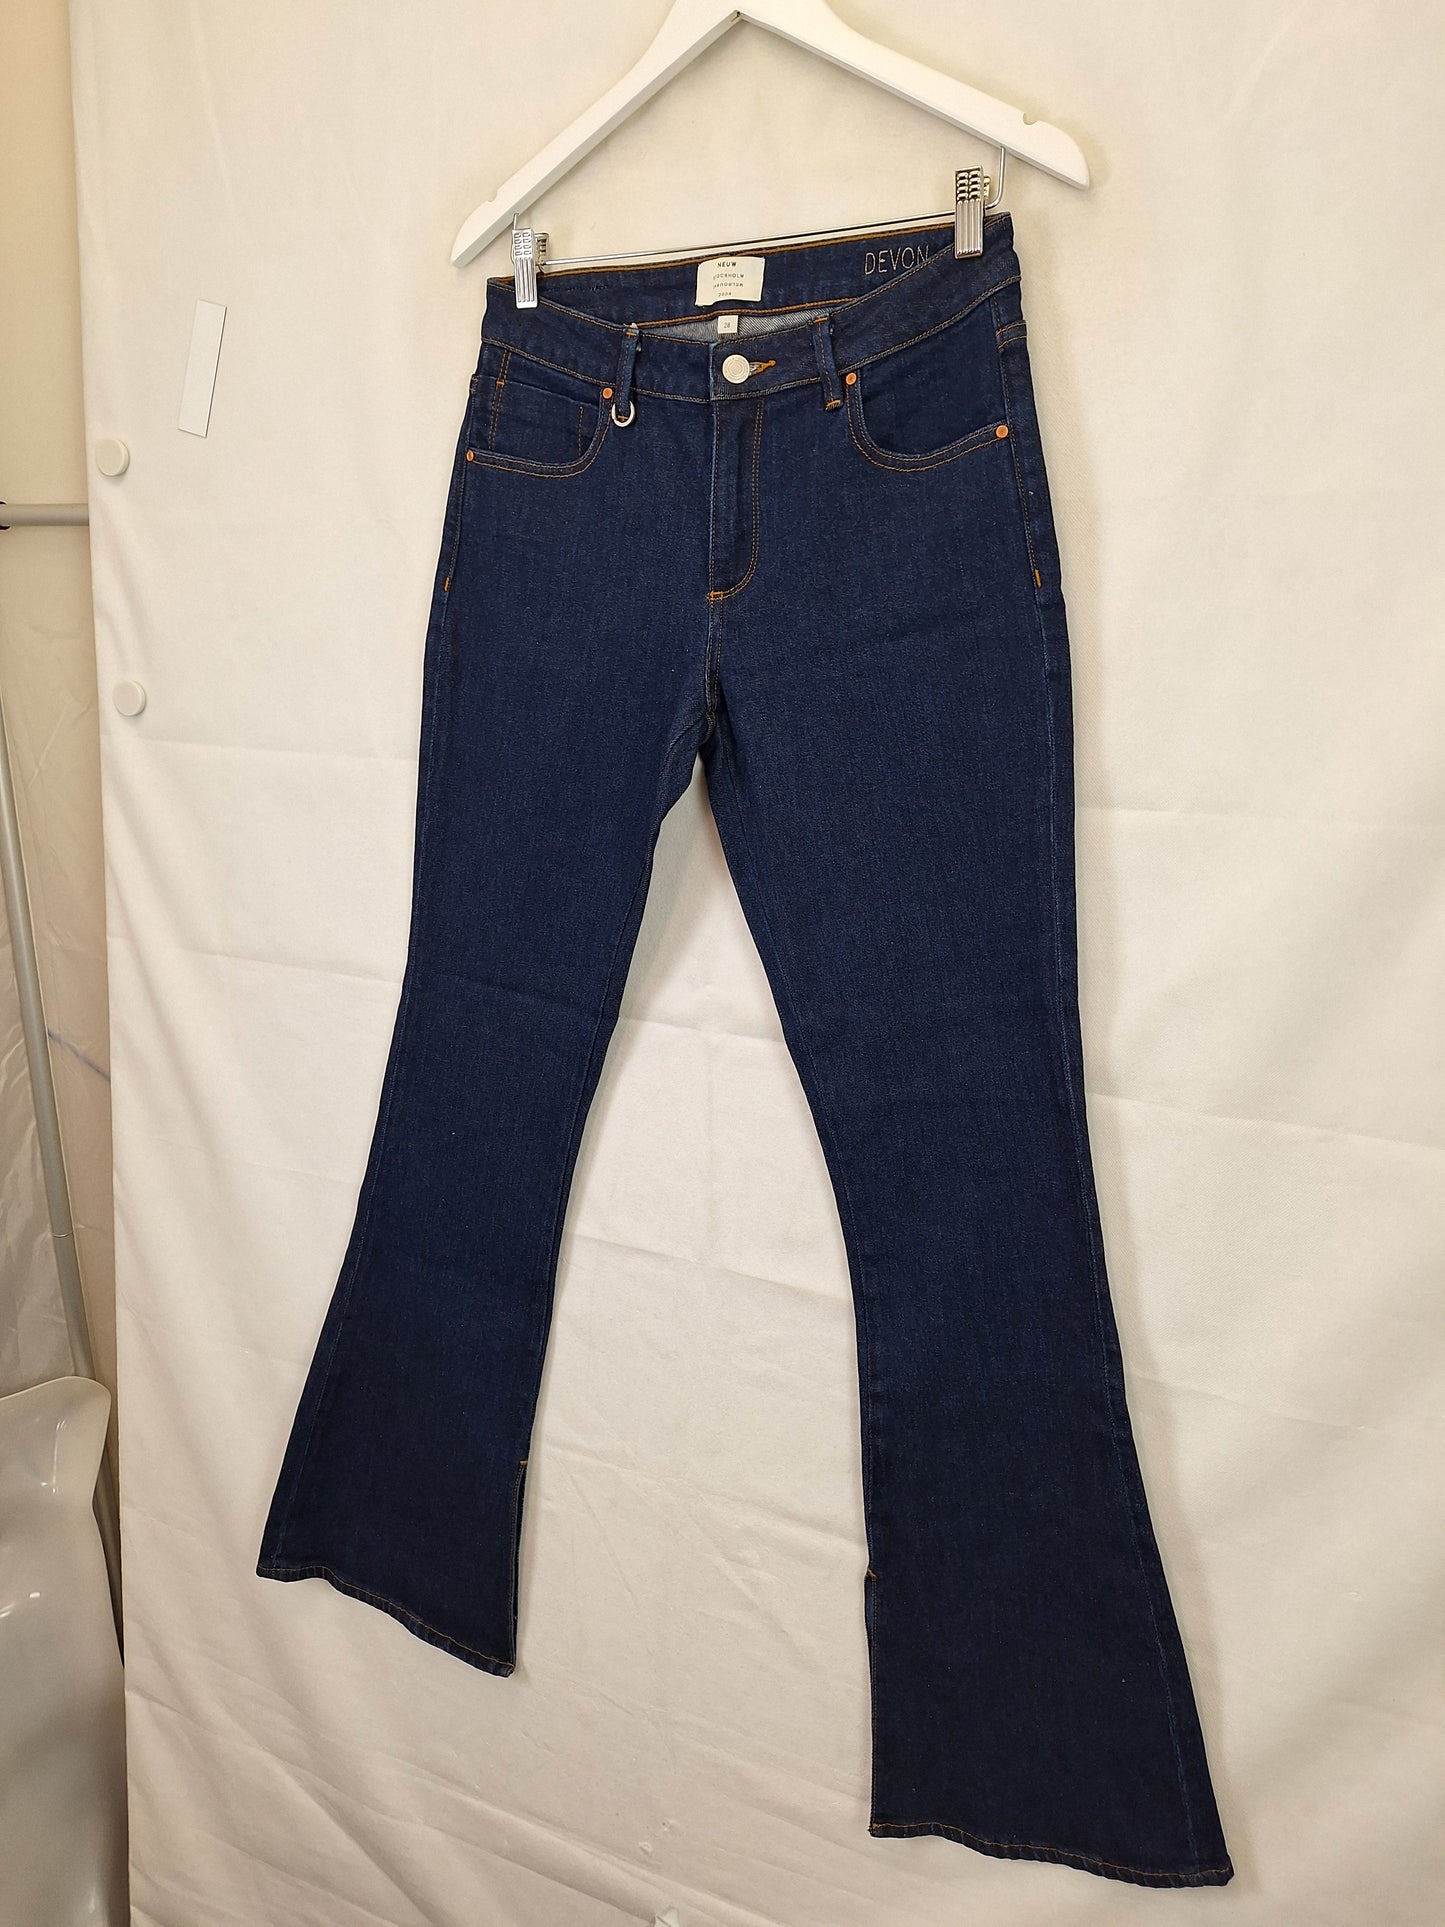 Neuw Devon Spilt Cuff Flare Denim Jeans Size 10 by SwapUp-Online Second Hand Store-Online Thrift Store